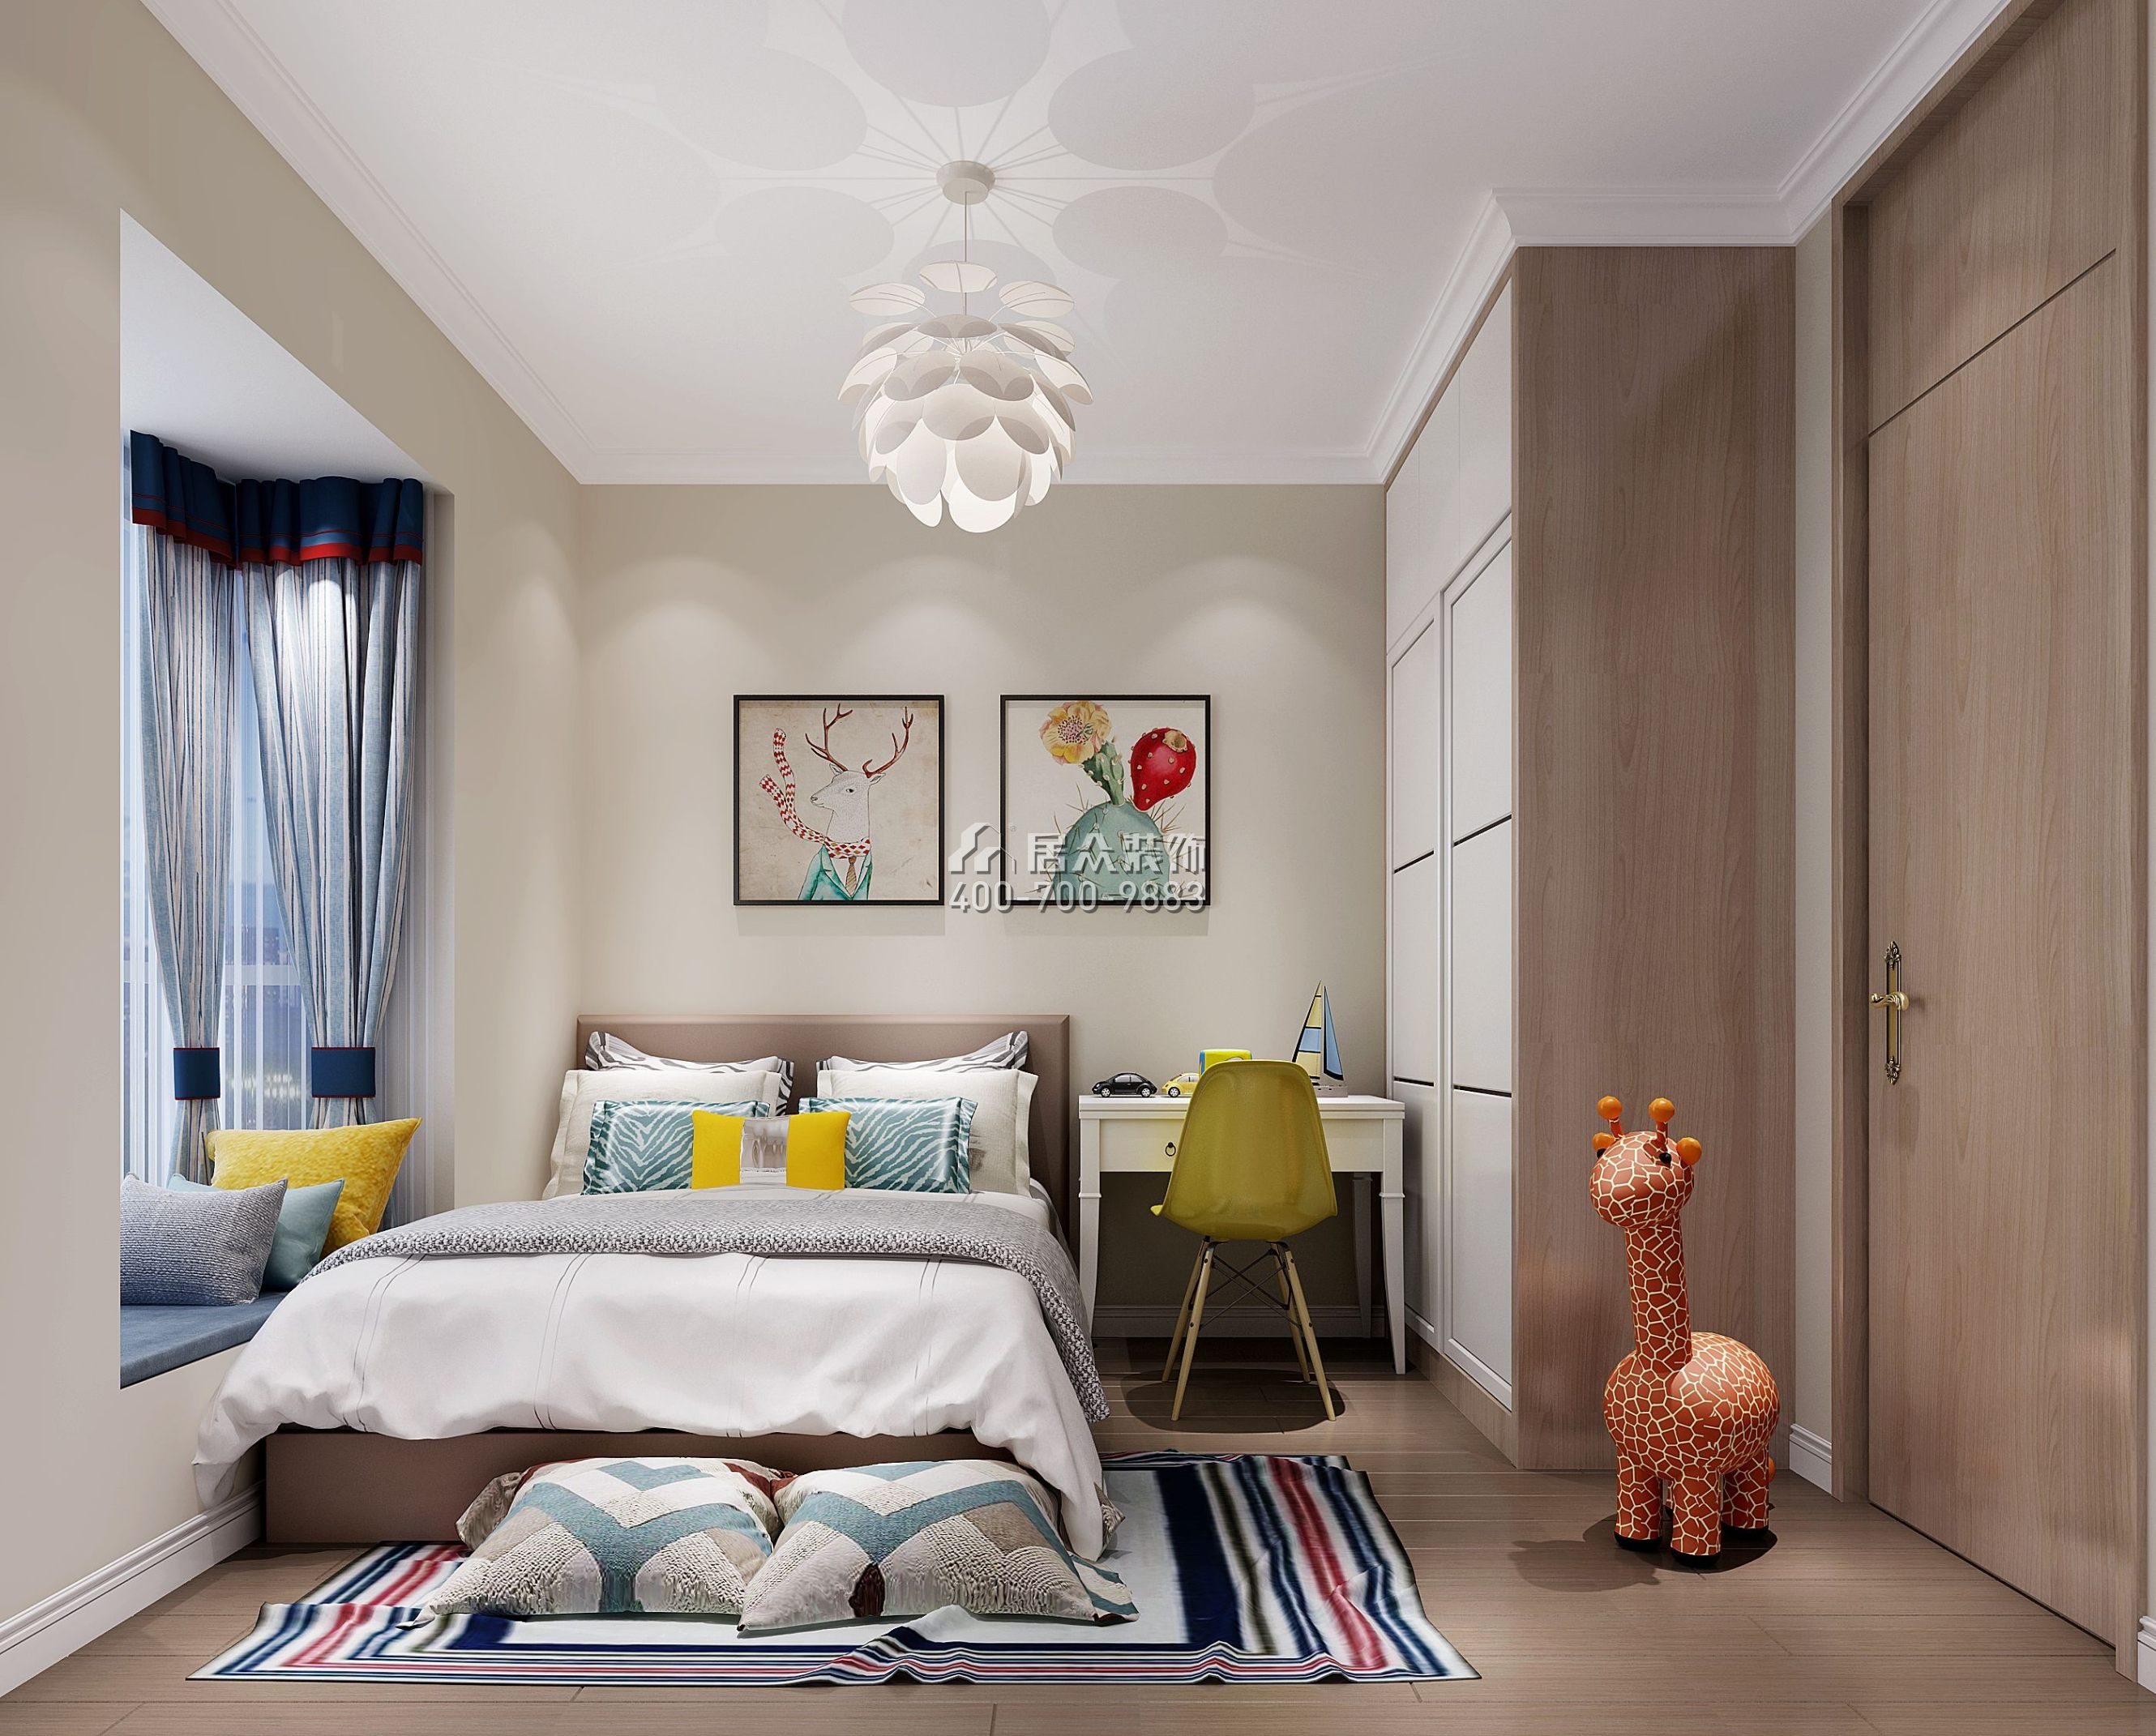 梧桐花園98平方米現代簡約風格平層戶型臥室裝修效果圖